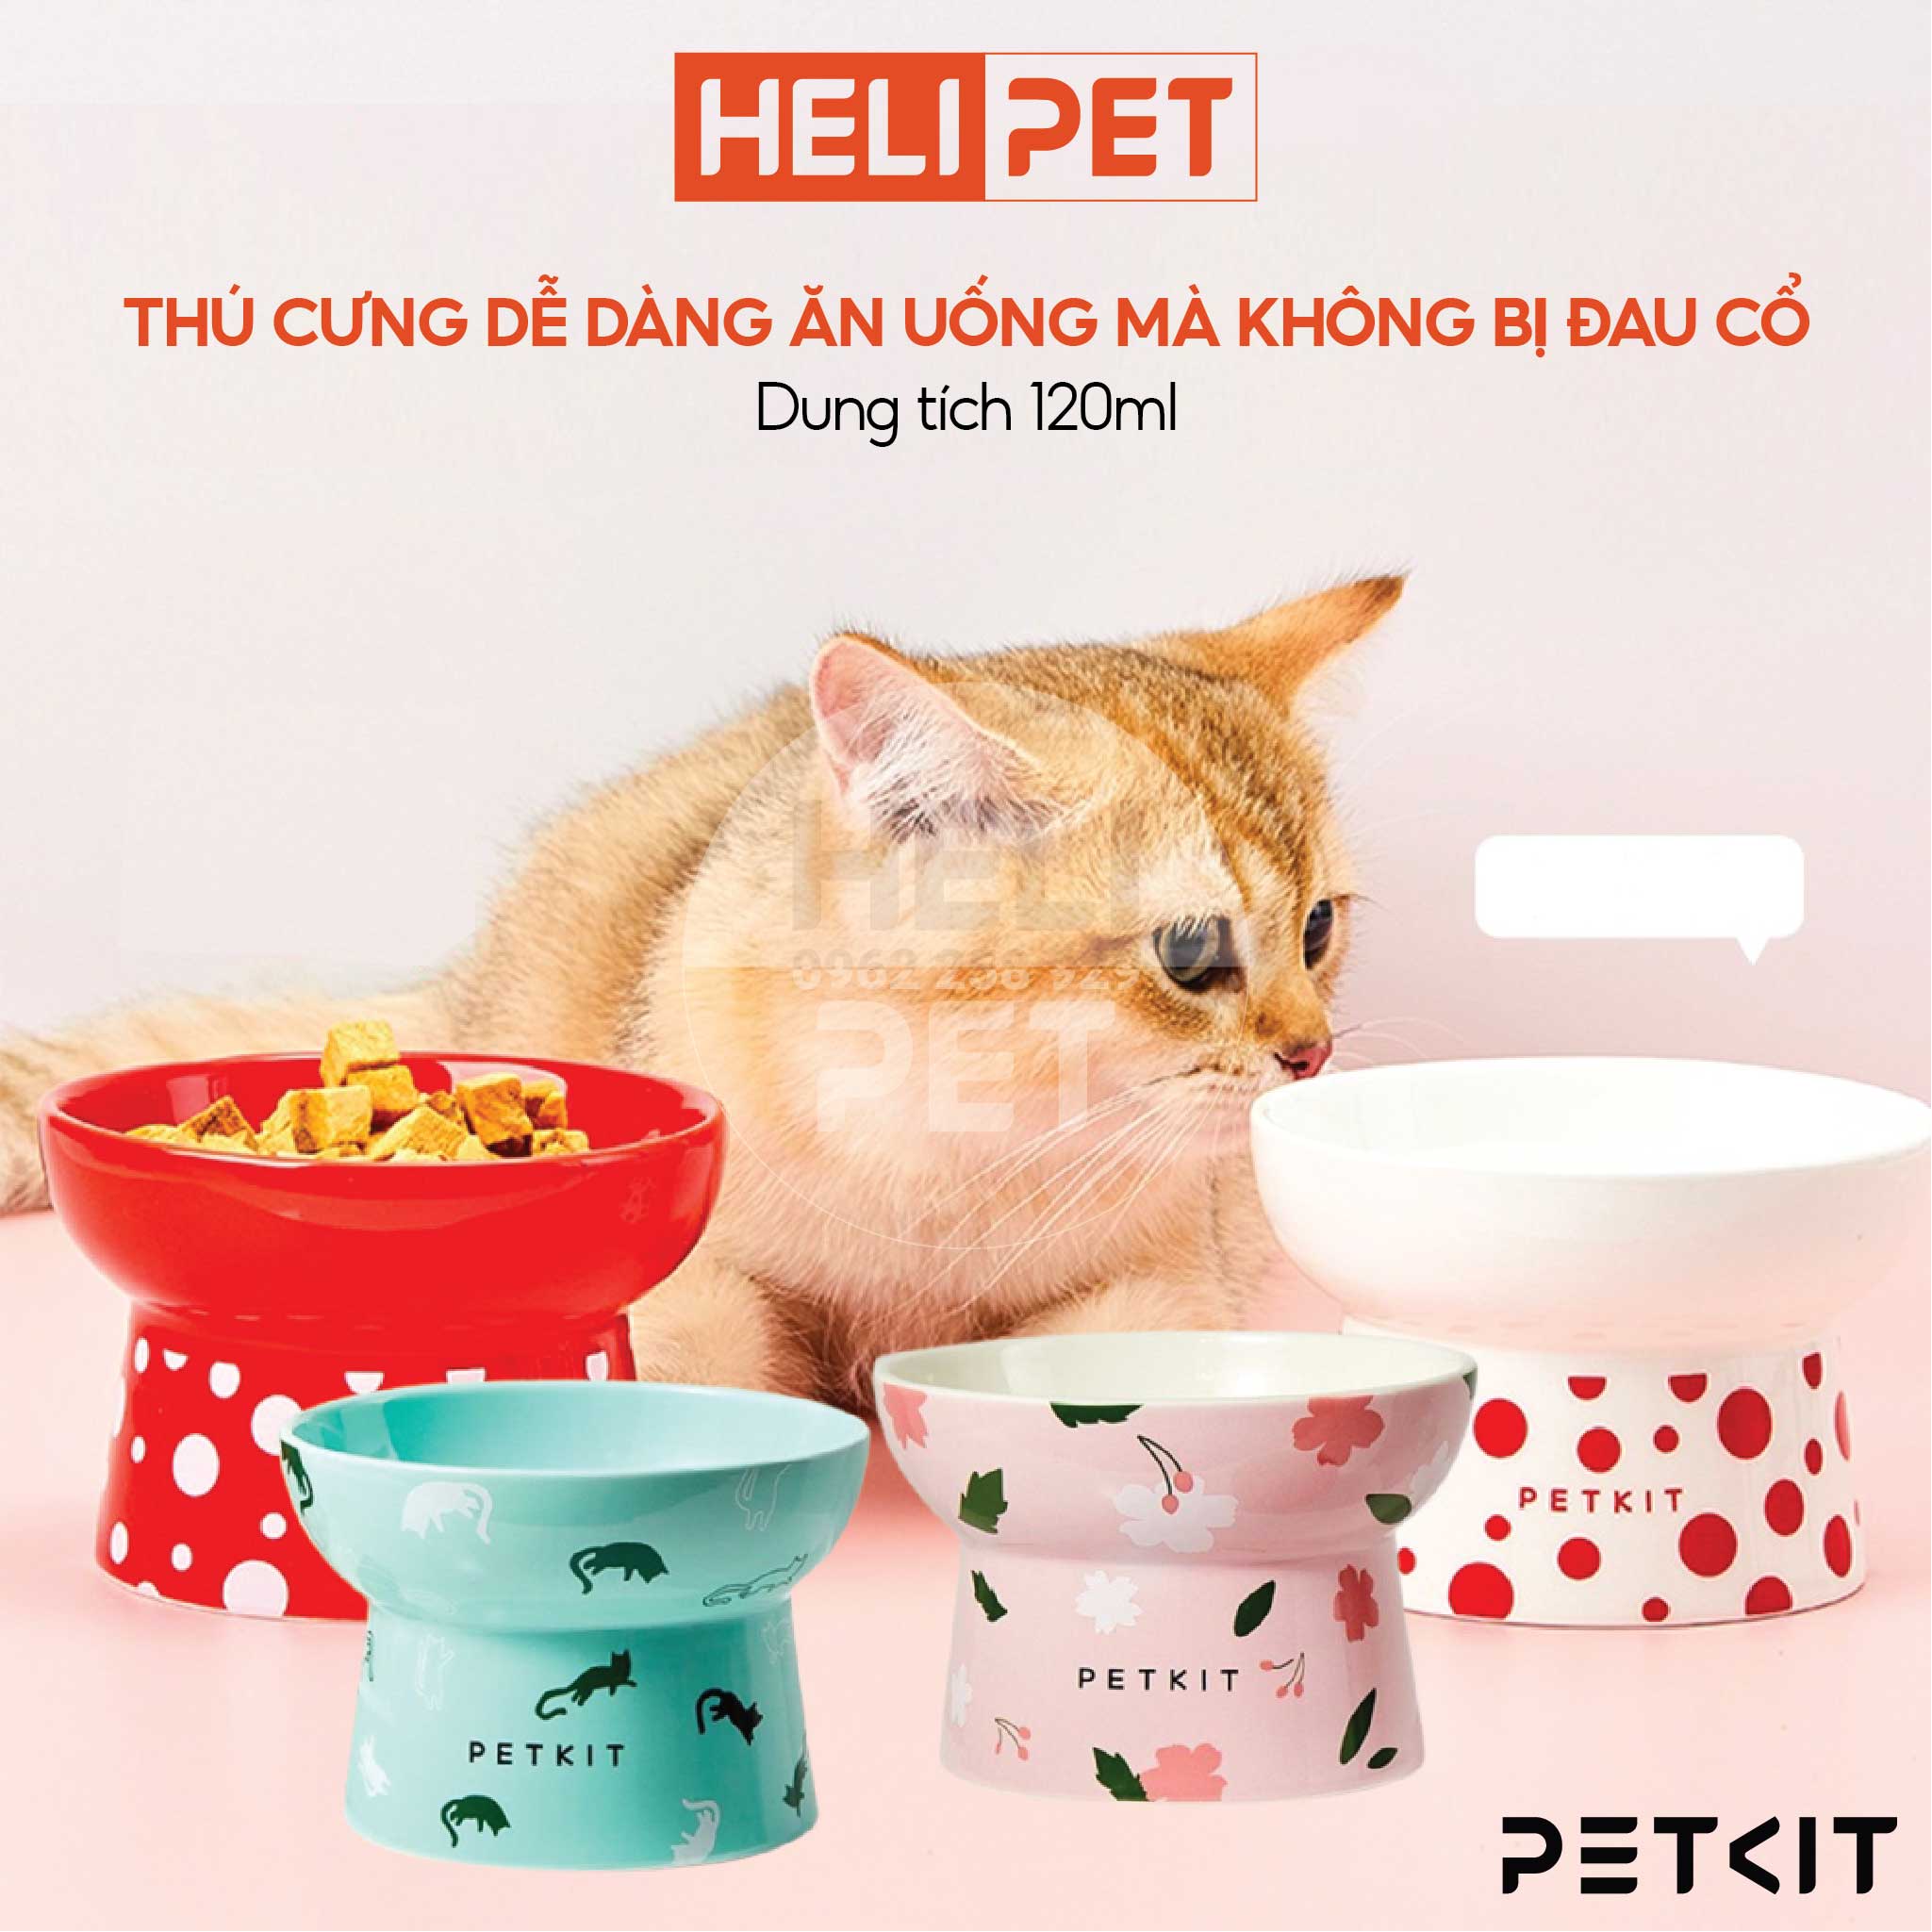 Chén Ăn, Bát Ăn Cho Chó Mèo Chống Gù Làm Từ Gốm Sứ Cao Cấp Ceramic Petkit Cera Spot- HeLiPet